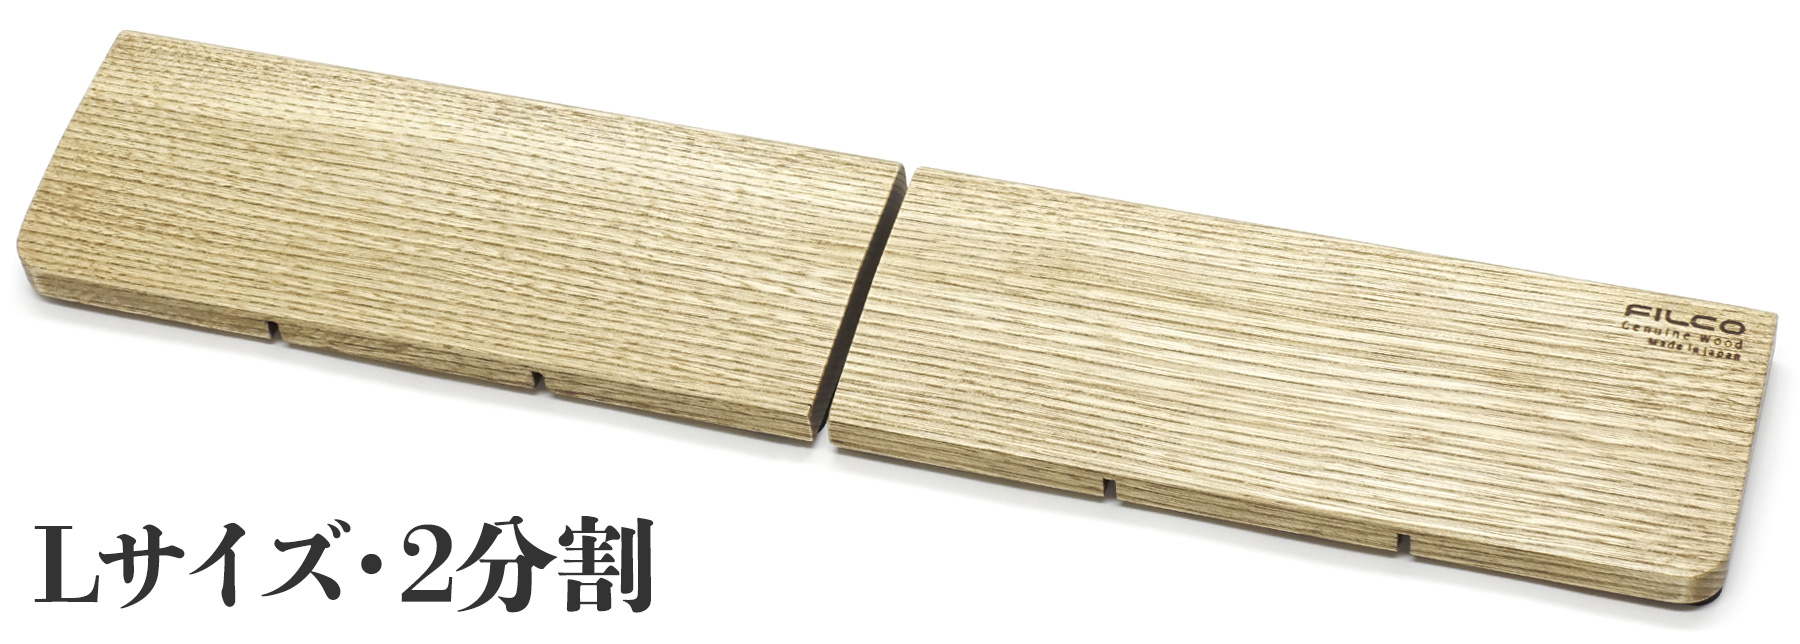 【北海道産天然木】FILCO Genuine Wood Wrist Rest L size 分離型(2分割)